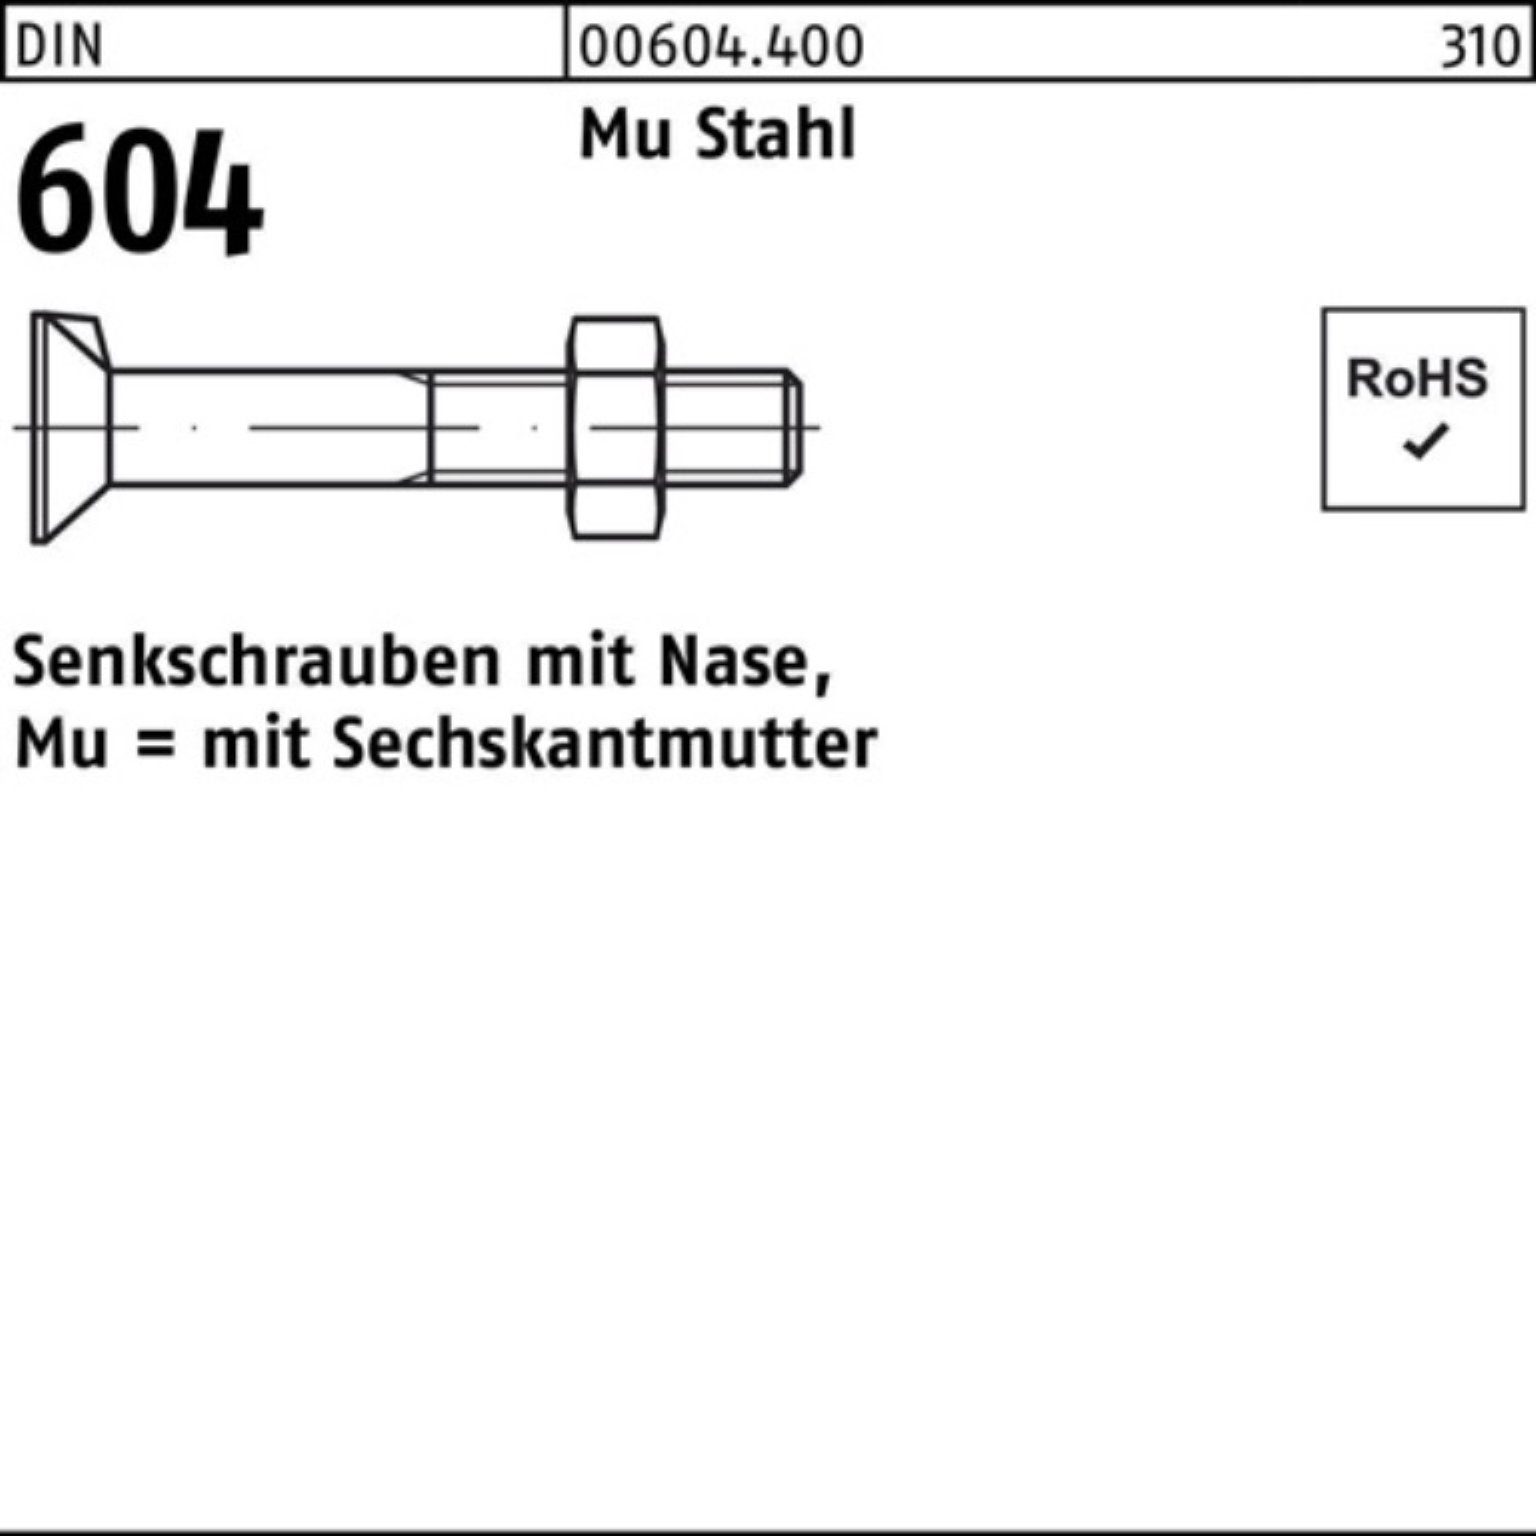 Reyher Senkschraube 100er Pack Senkschraube DIN 604 Nase/6-ktmutter M10x 40 Mu Stahl 4.6 1